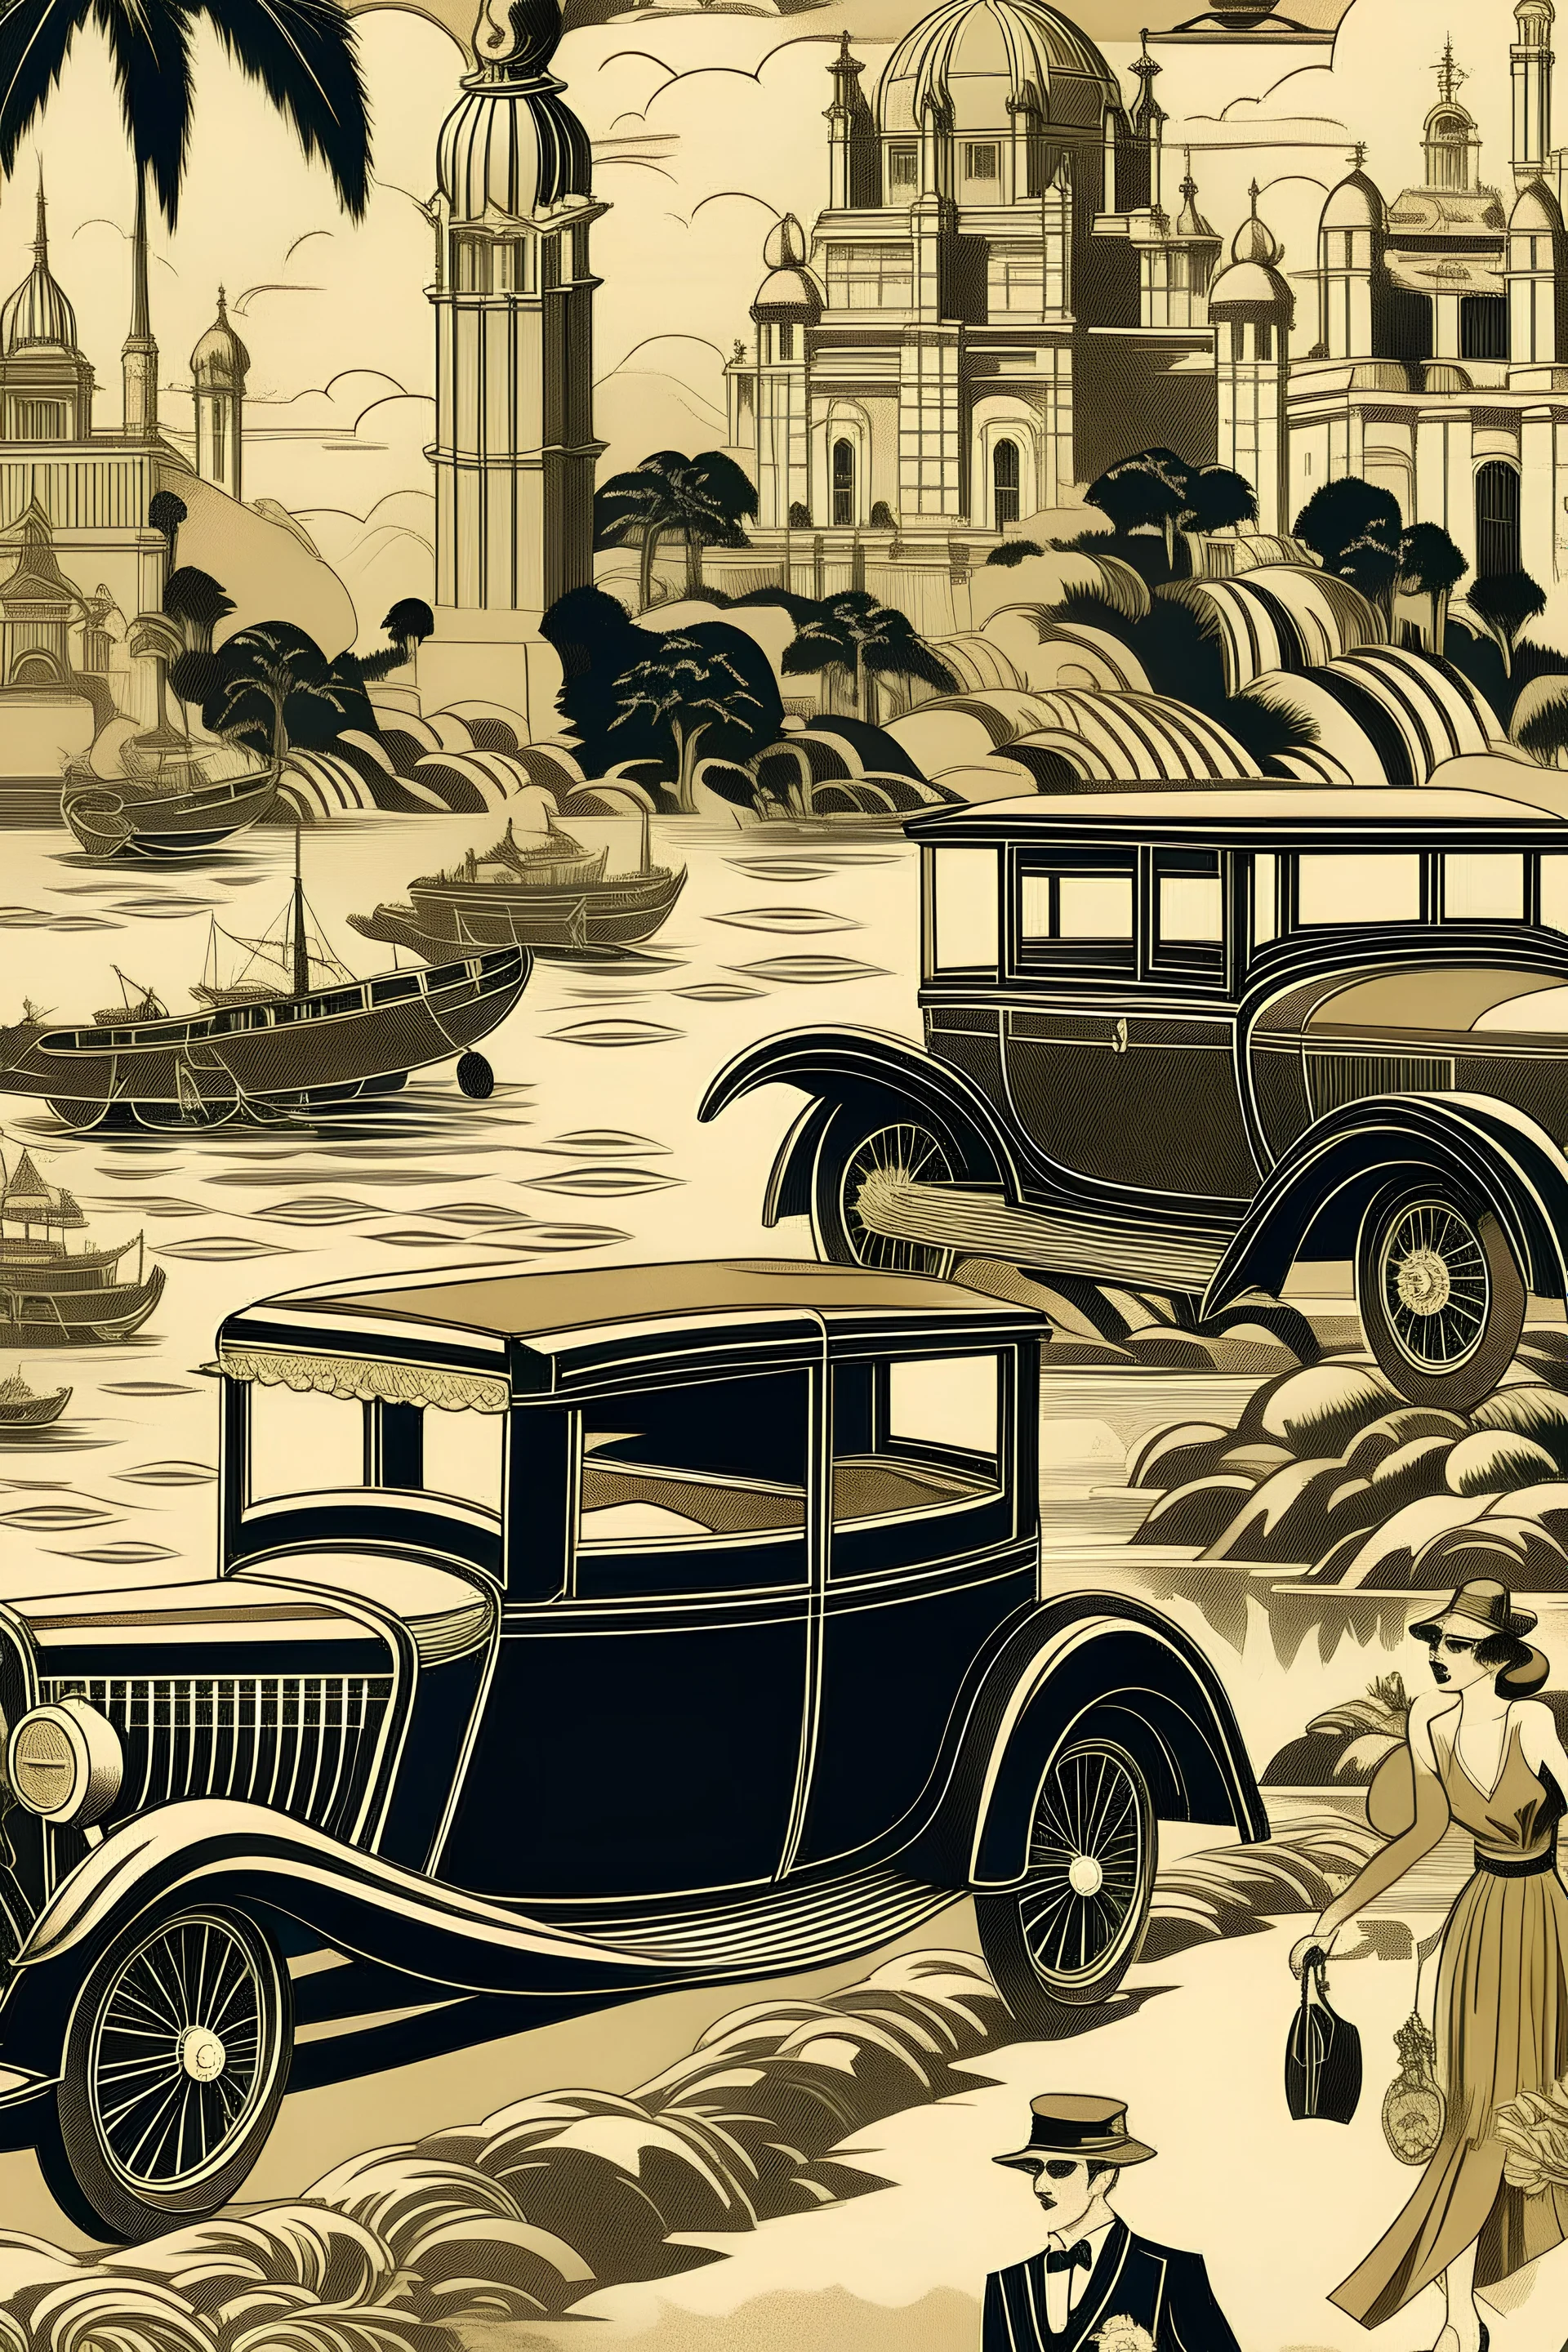 travel scene in the 20s motif